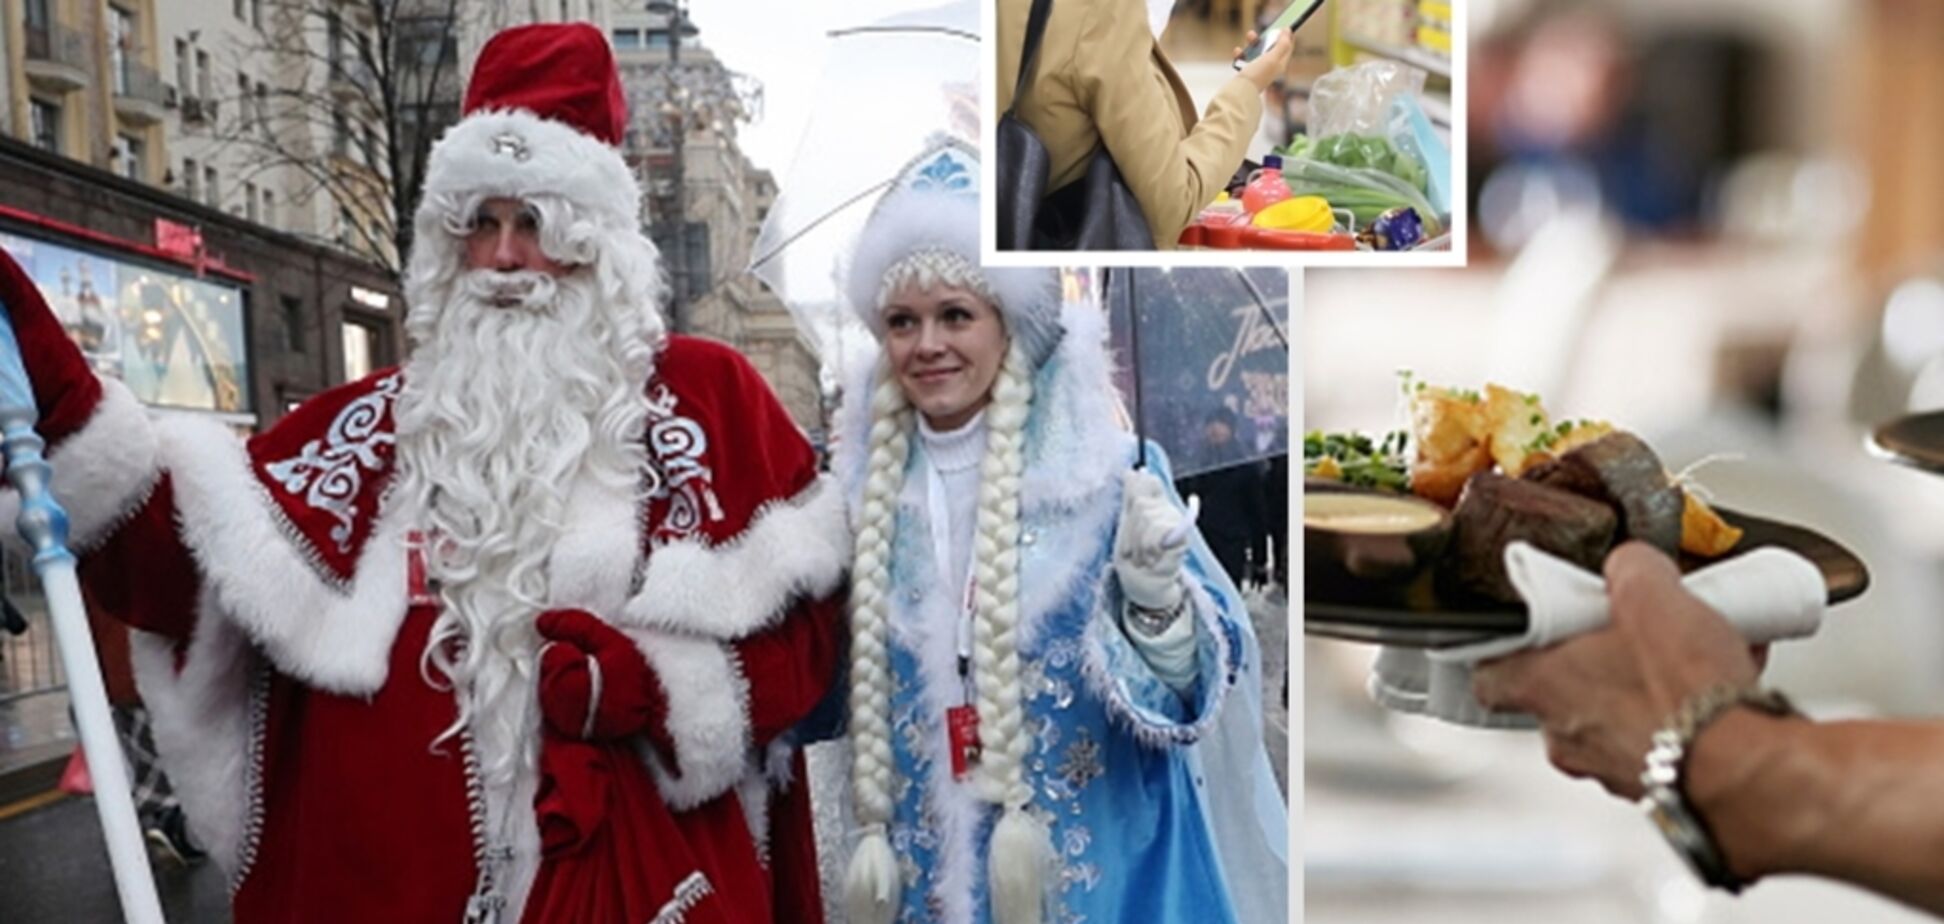 З житлом, у магазинах, на роботі: українців масово 'надурюють' перед Новим роком